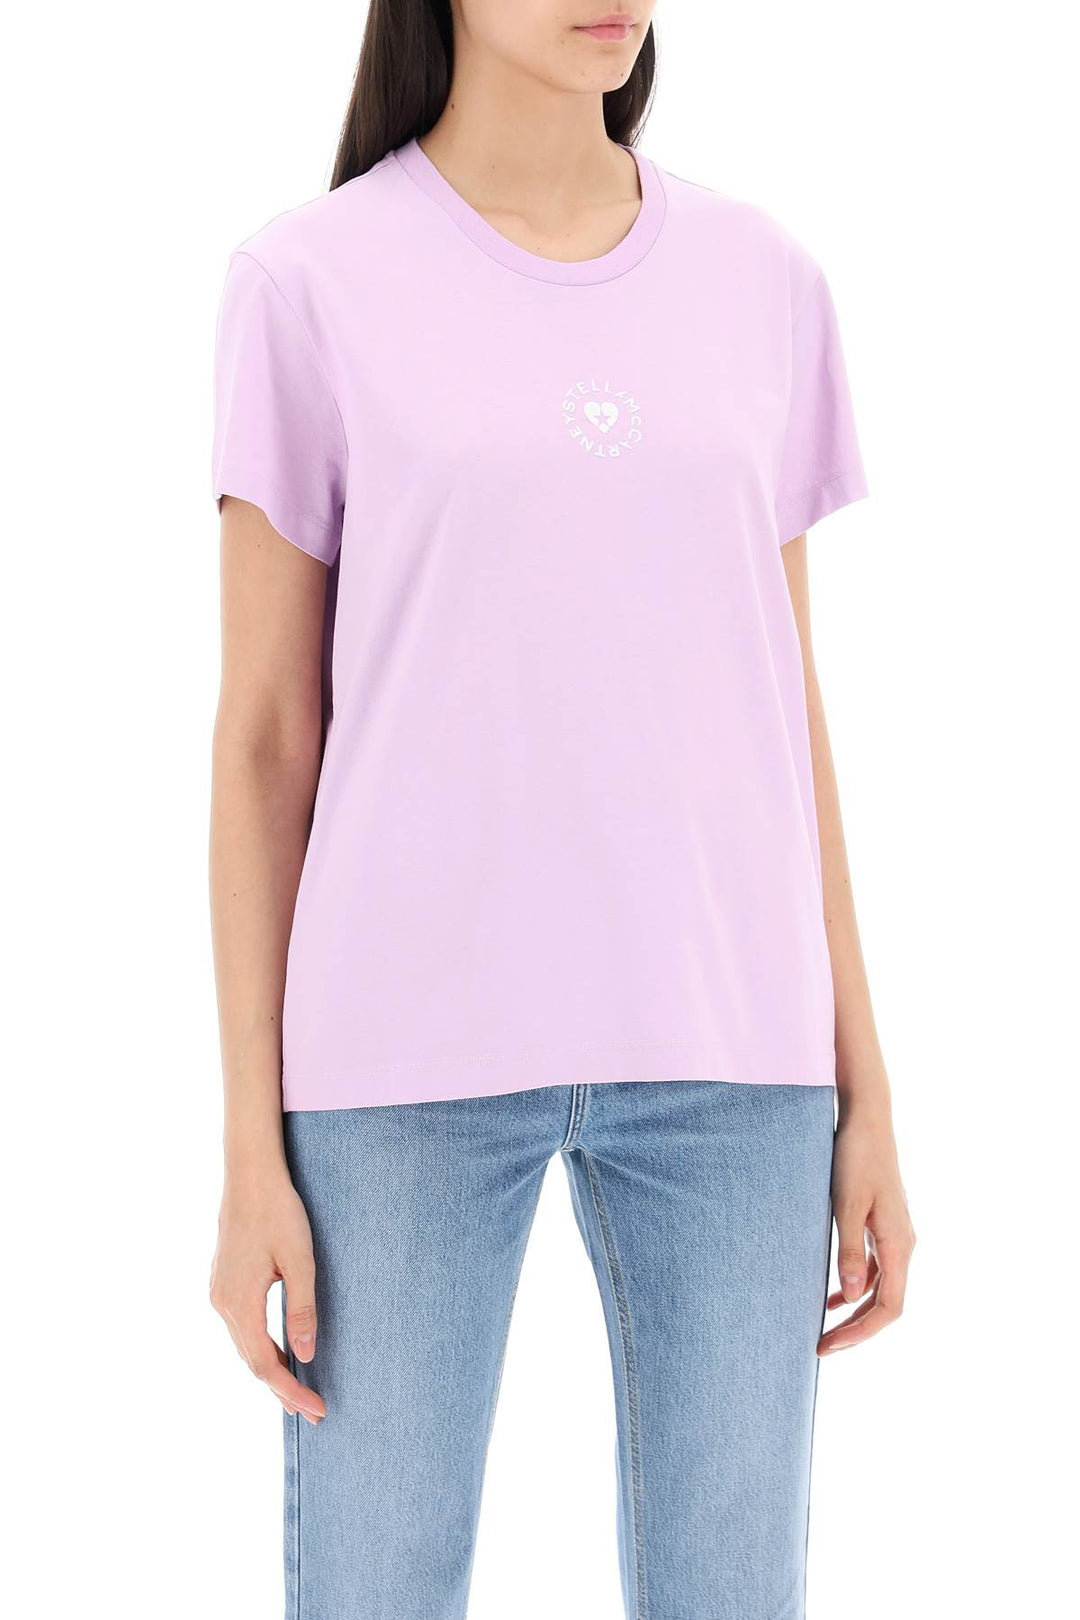 Stella Mc Cartney Iconic Mini Heart T Shirt   Purple